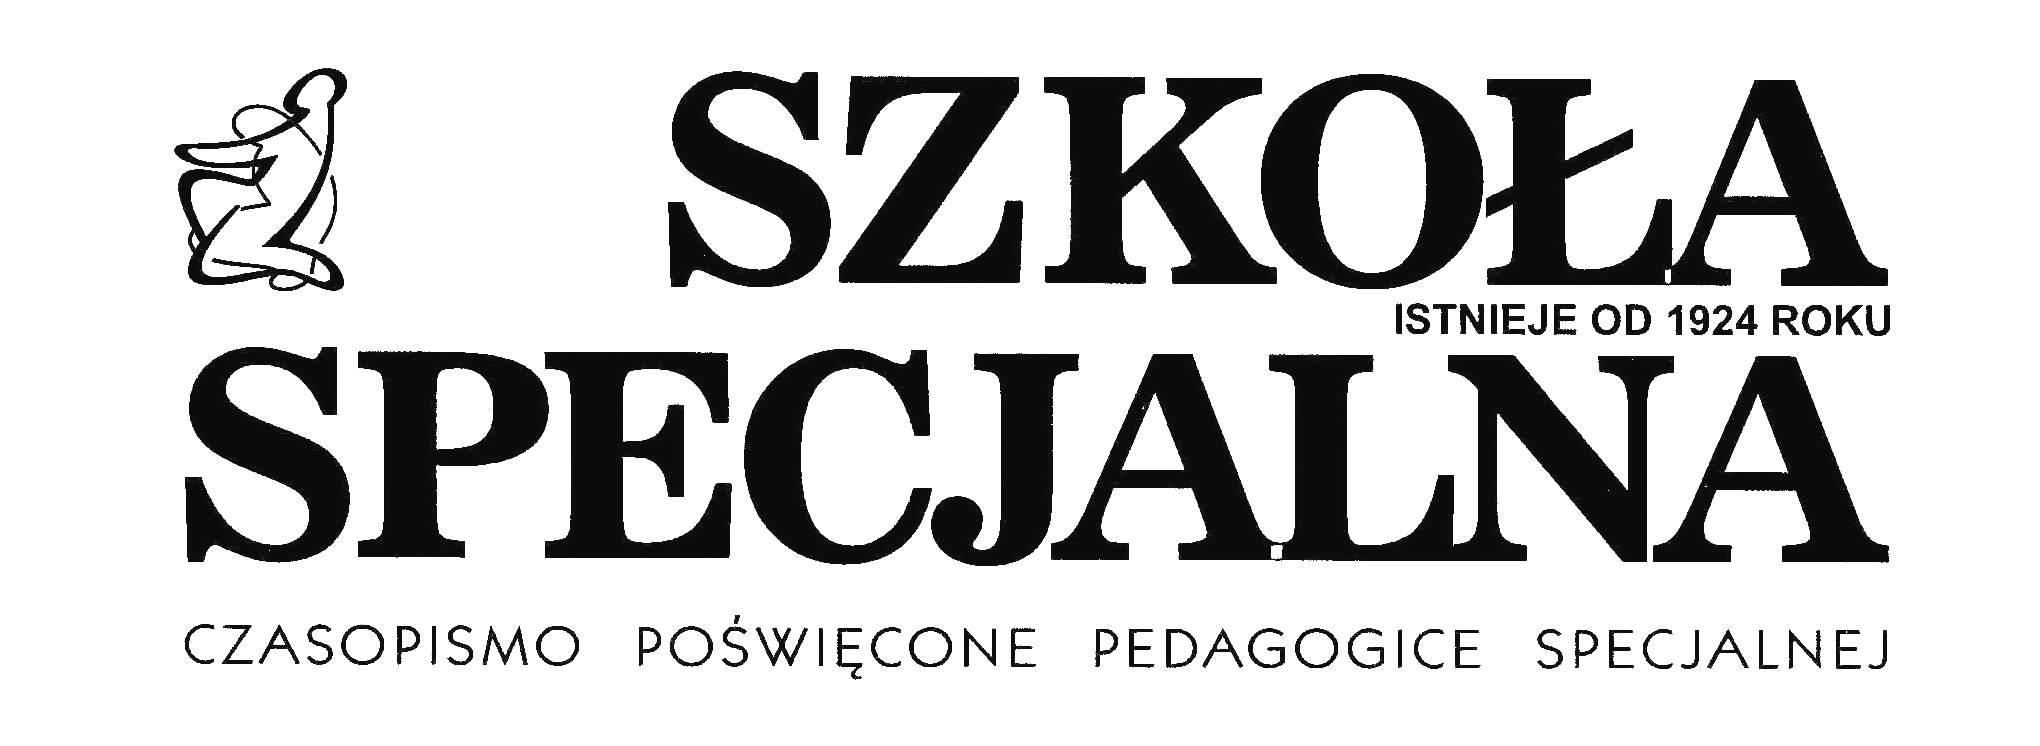 logo of the journal  szkoła specjalna